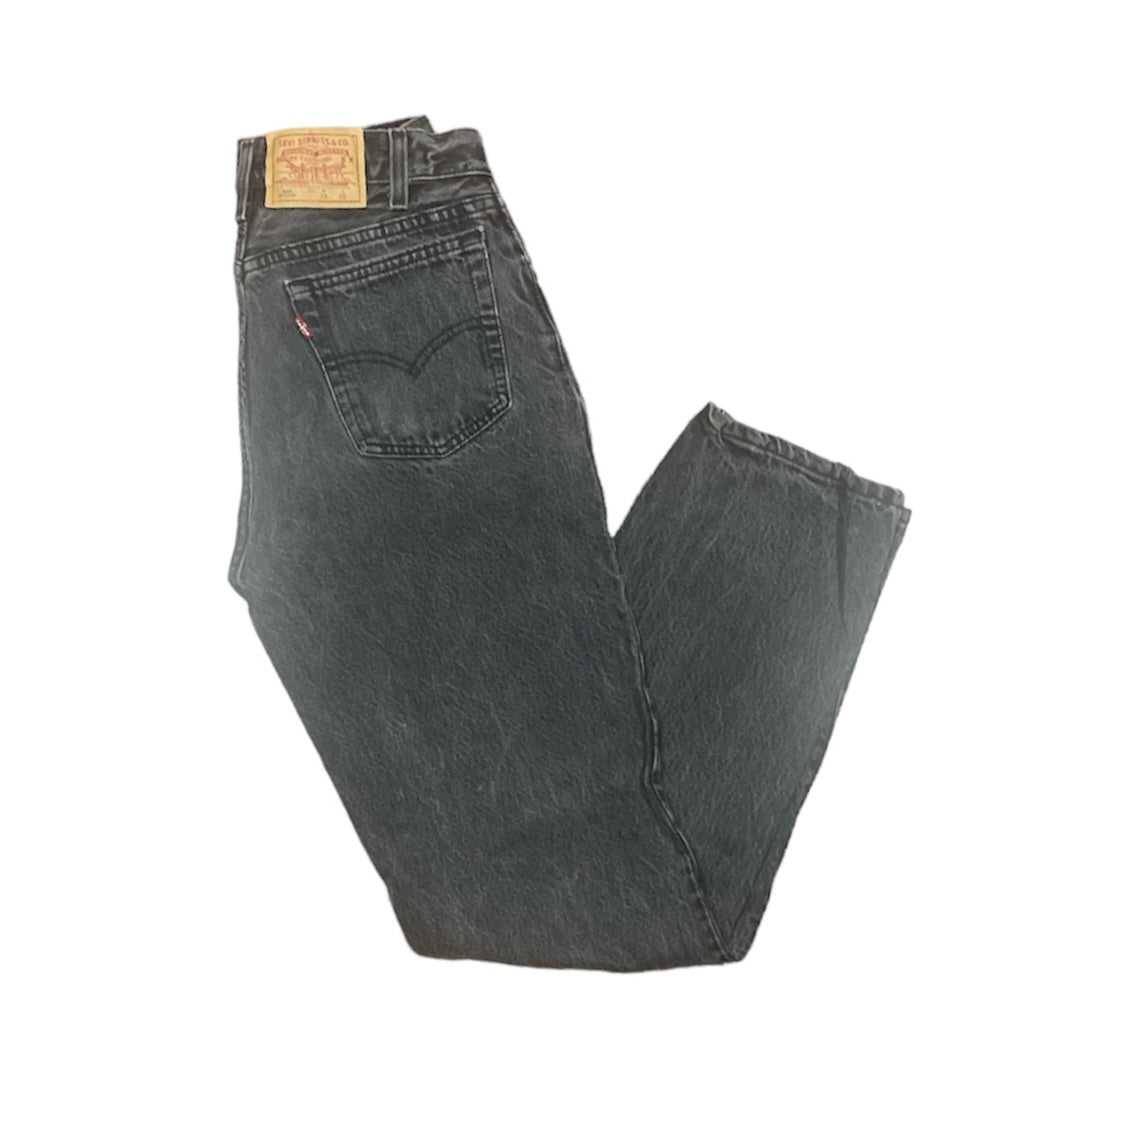 Vintage Levis 501 Student Black Jeans (W29/L30)